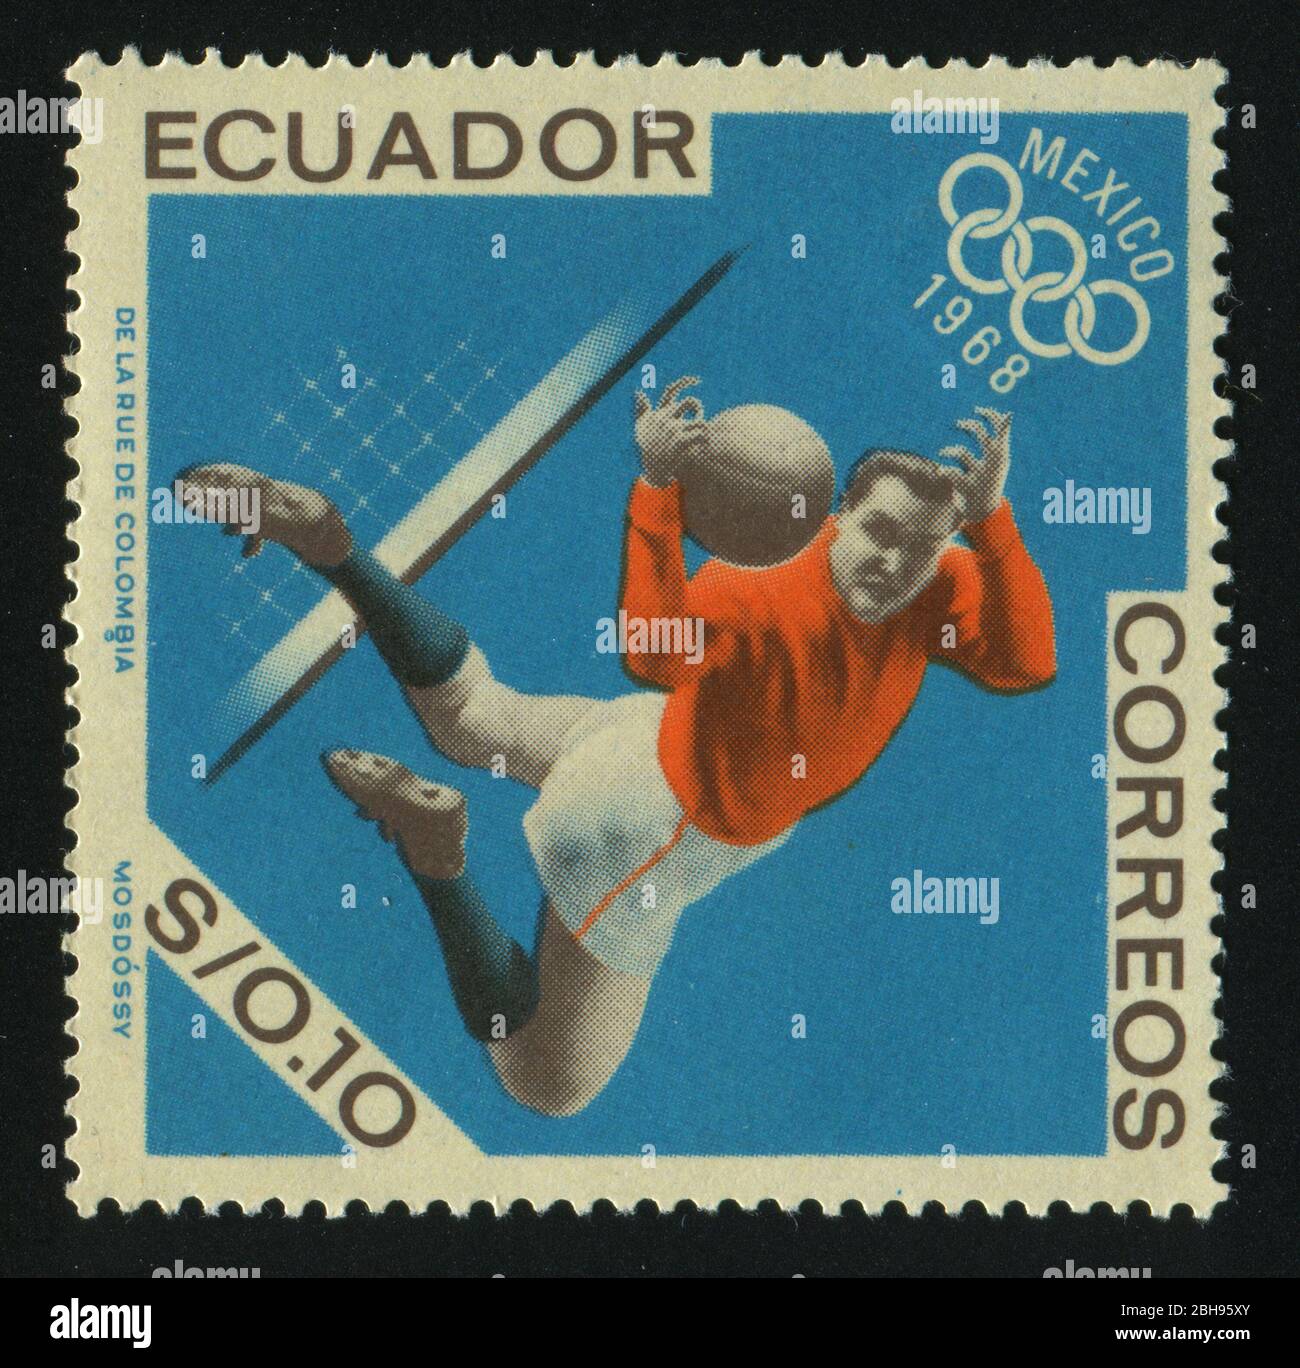 ECUADOR - CIRCA 1968: stamp printed by Ecuador, shows ball, circa 1968. Stock Photo